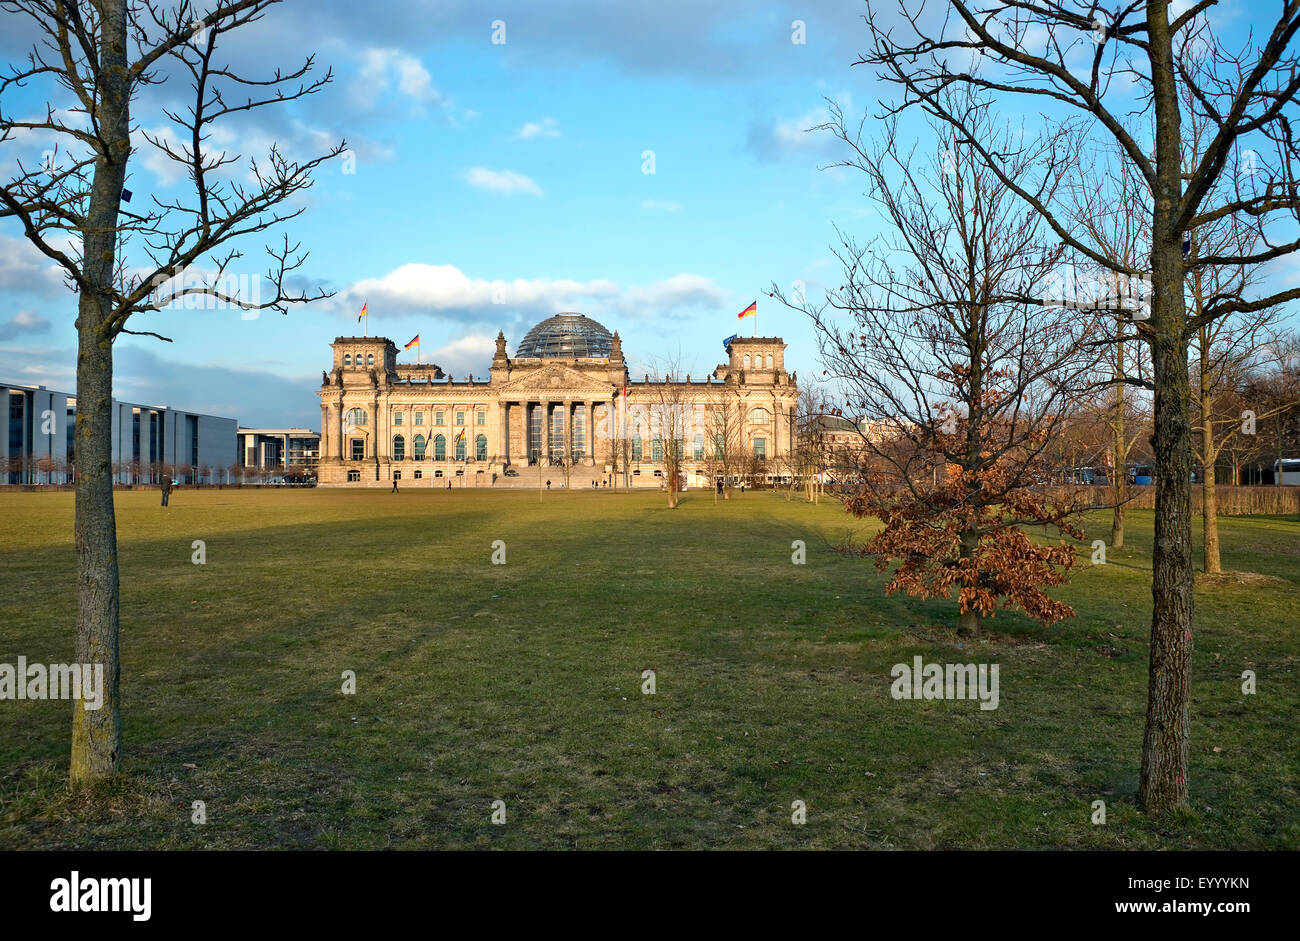 Bâtiment du Reichstag, Berlin, Allemagne Banque D'Images